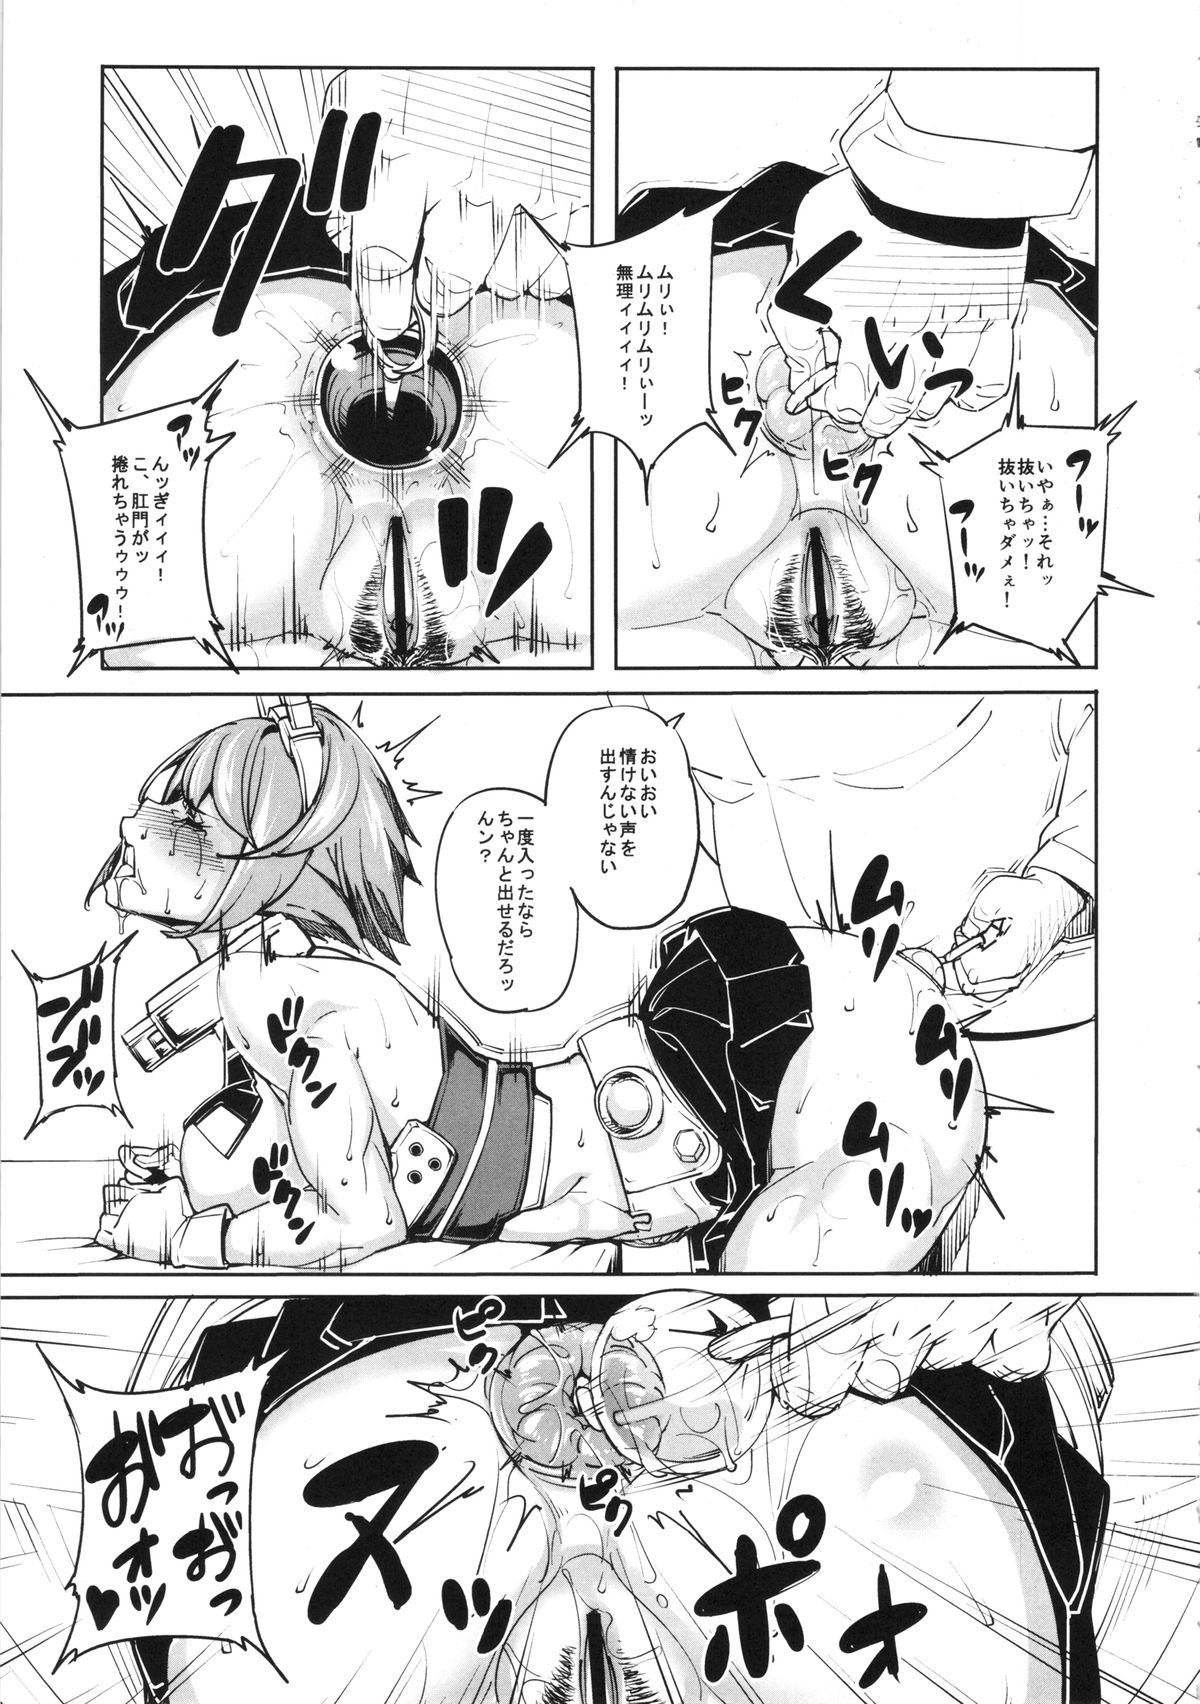 Ride Kinotsuyoi KanMusu wa Anal ga Yowai to Iu... - Kantai collection Salope - Page 6